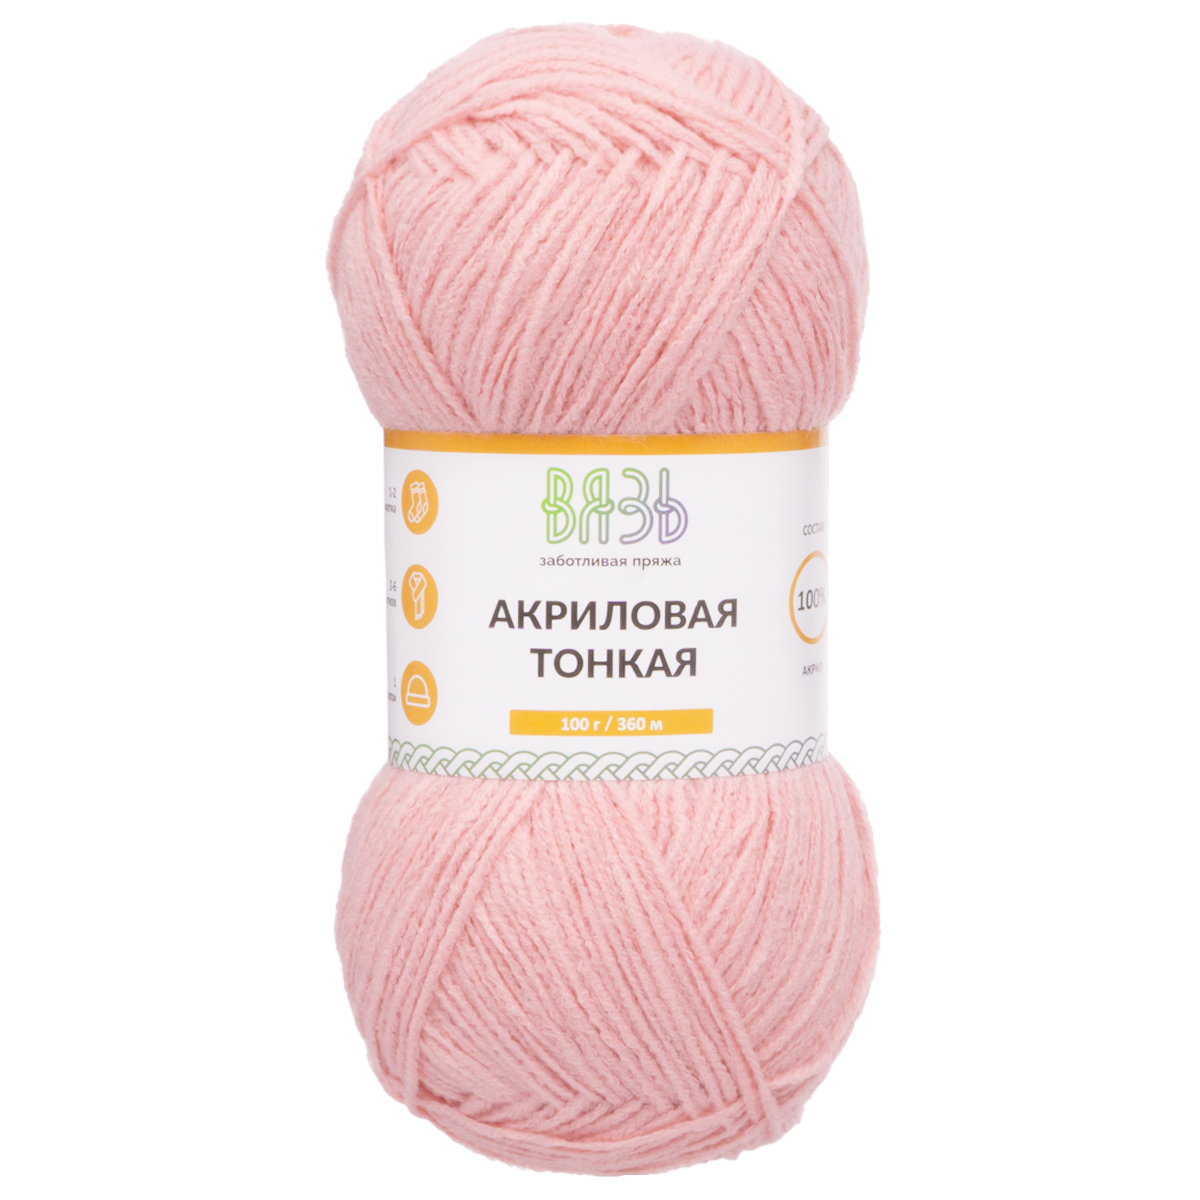 Пряжа для вязания Вязь Акриловая тонкая, 100г, 360м (103 светло-розовый), 3 мотка